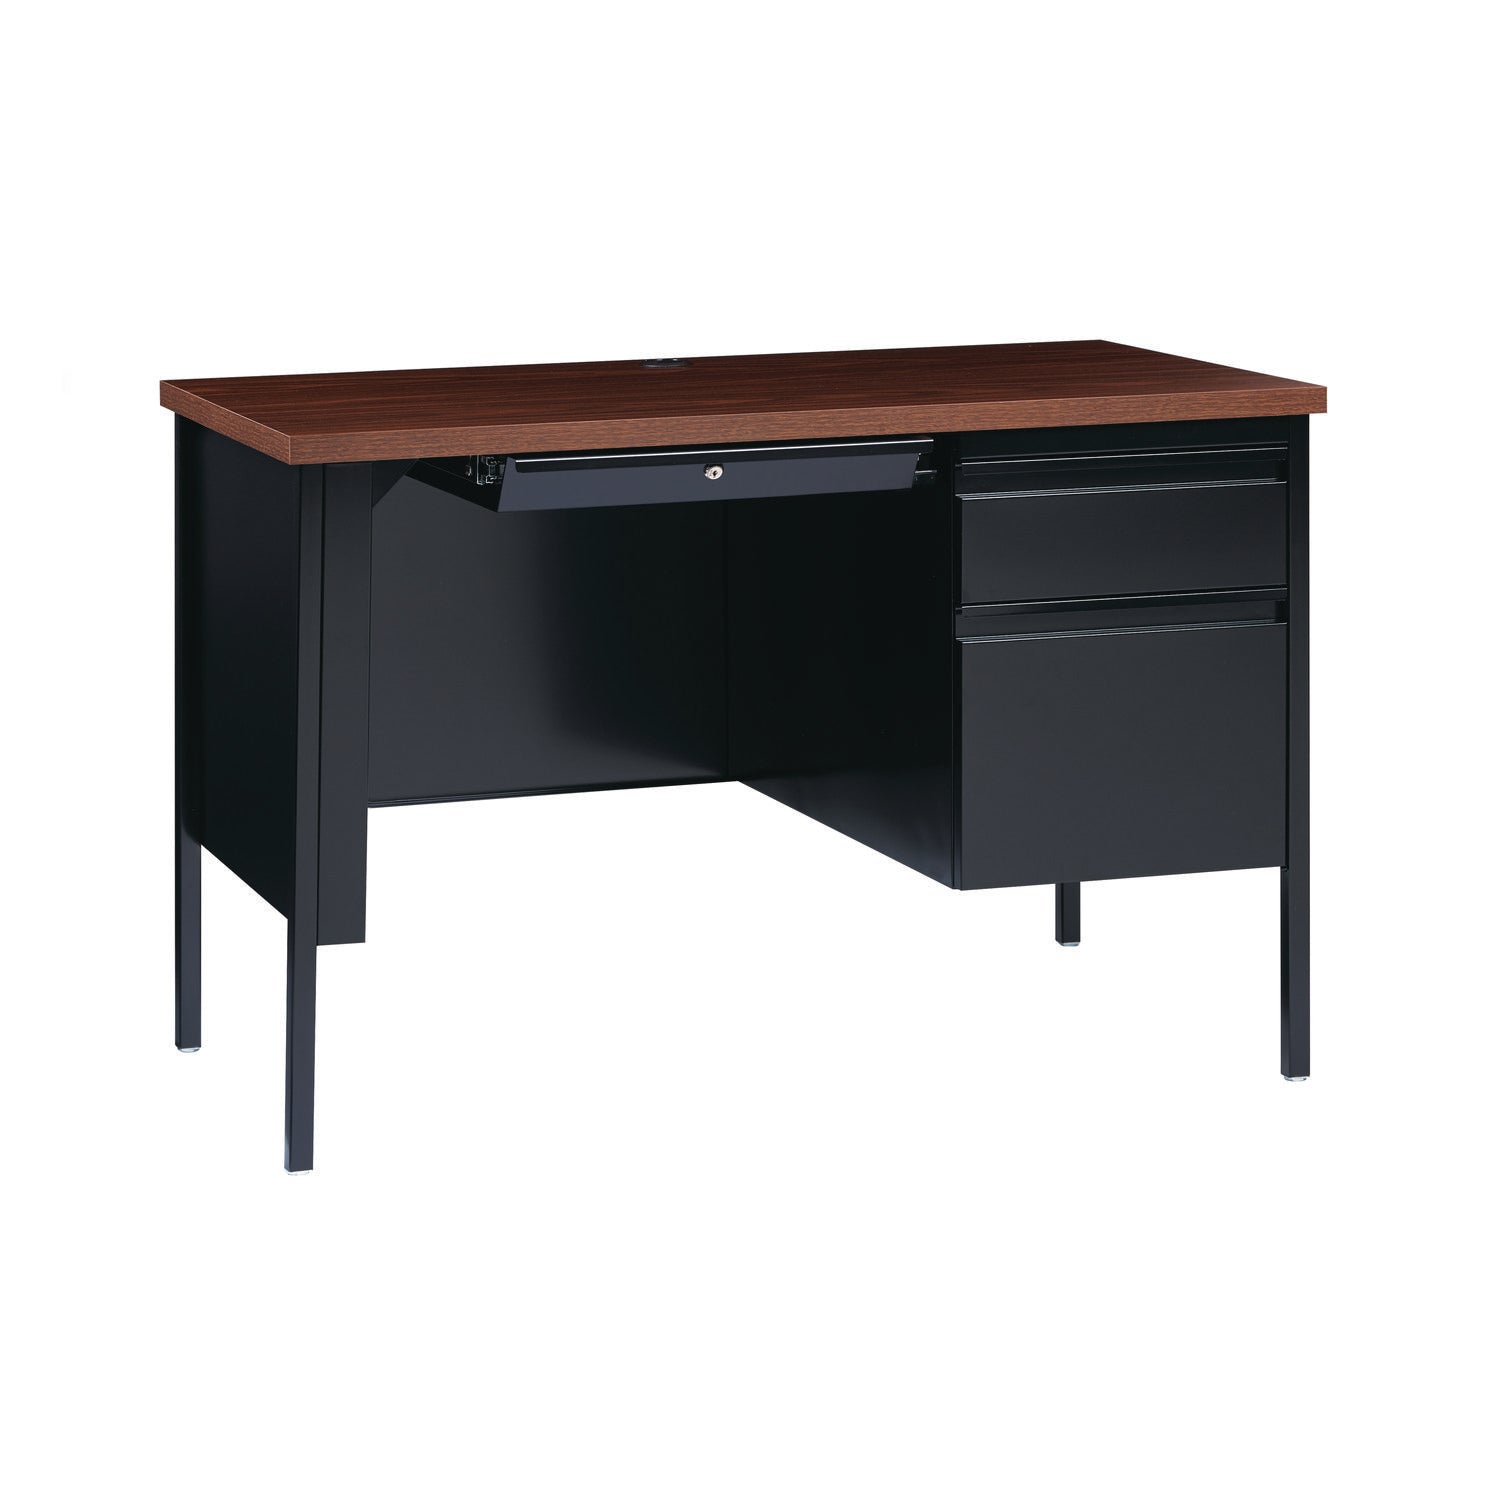 single-pedestal-steel-desk-455-x-24-x-295-mocha-black-black-legs_alehsd4524bm - 4